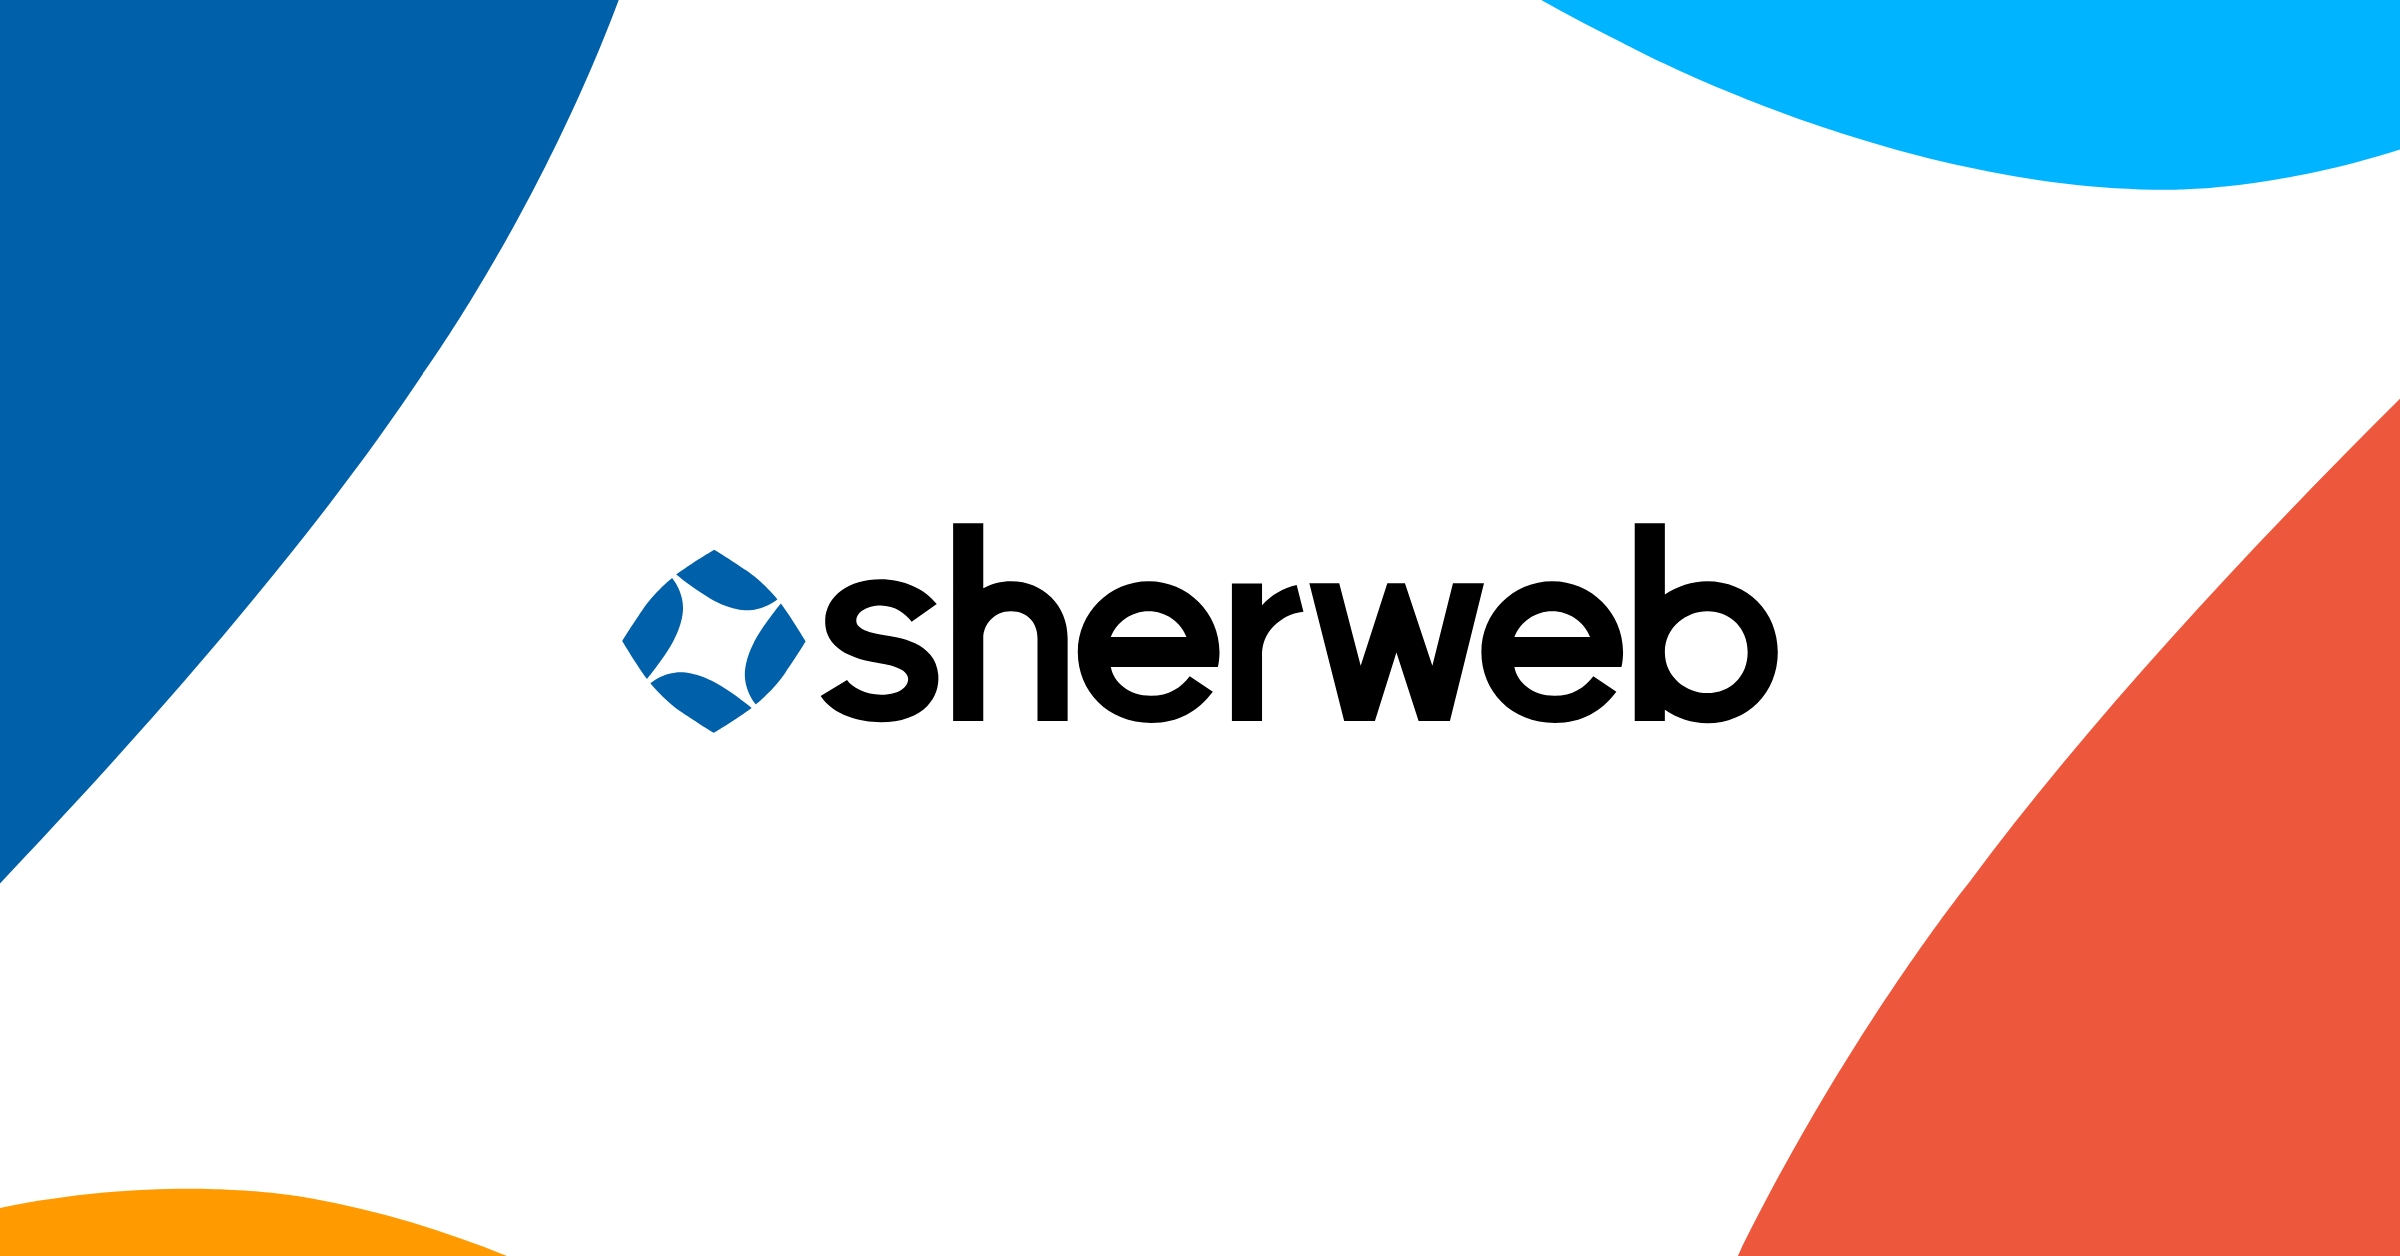 Sherweb